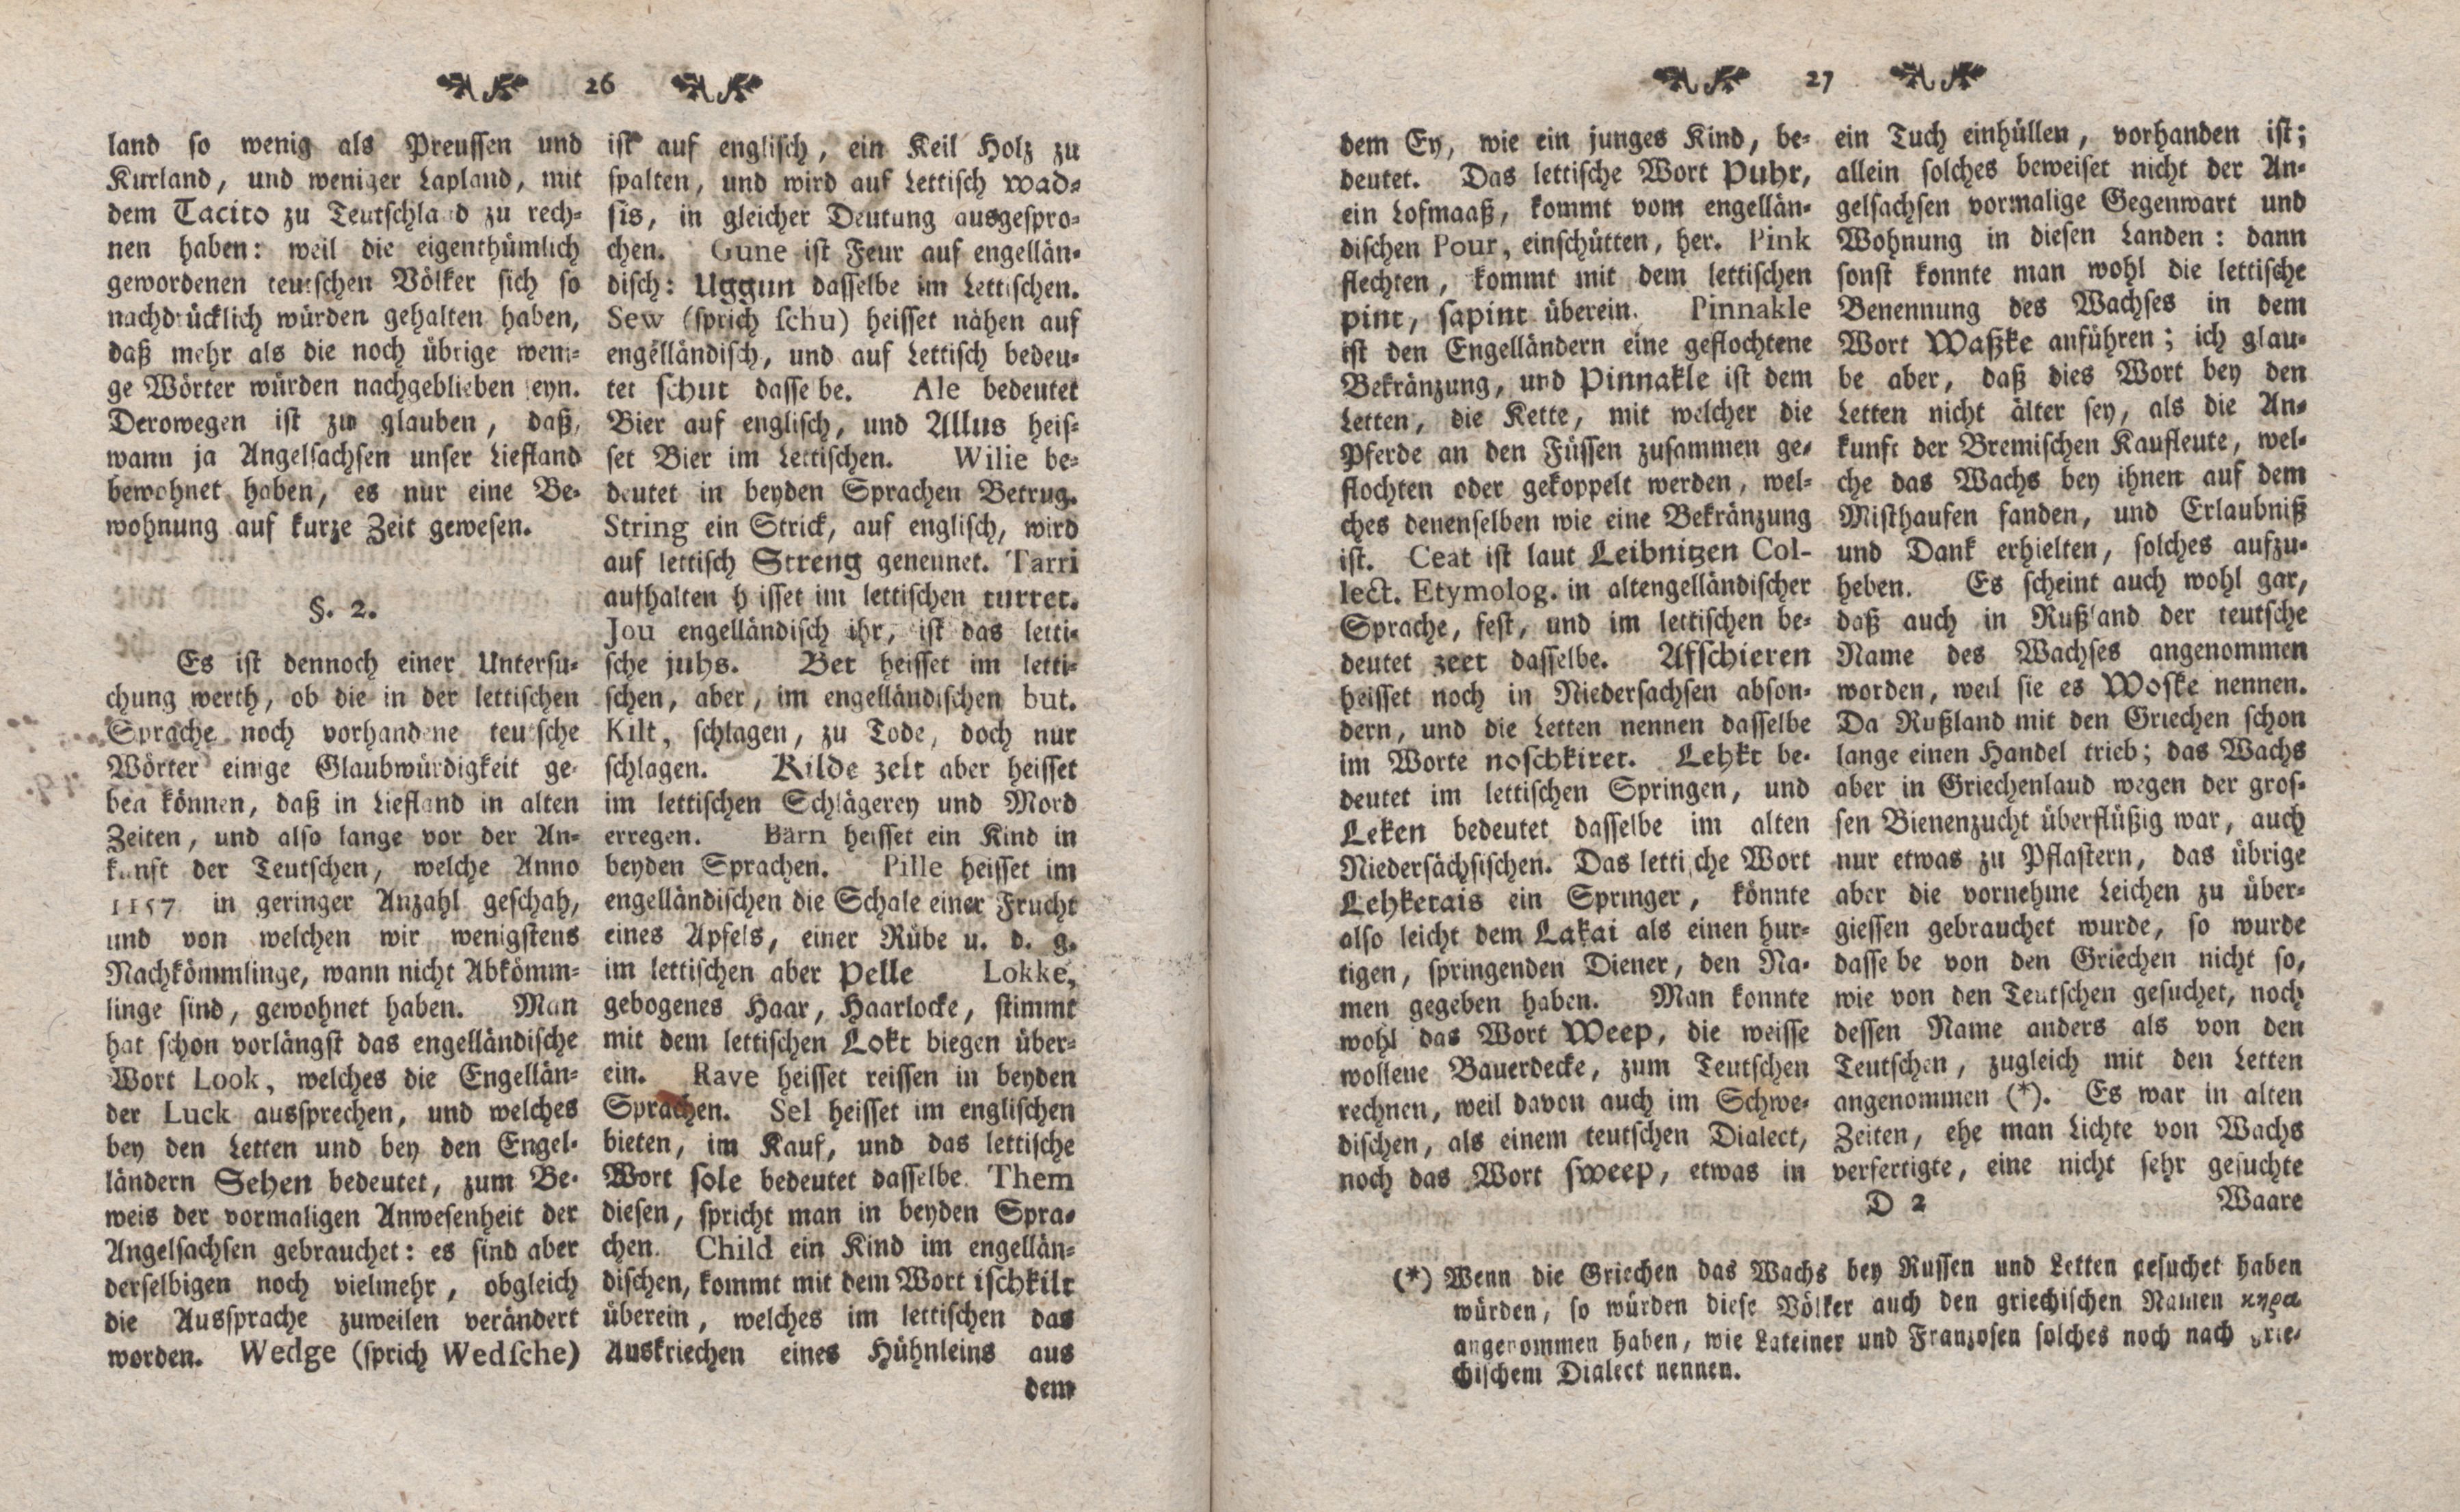 Gelehrte Beyträge zu den Rigischen Anzeigen 1762 (1762) | 14. (26-27) Main body of text